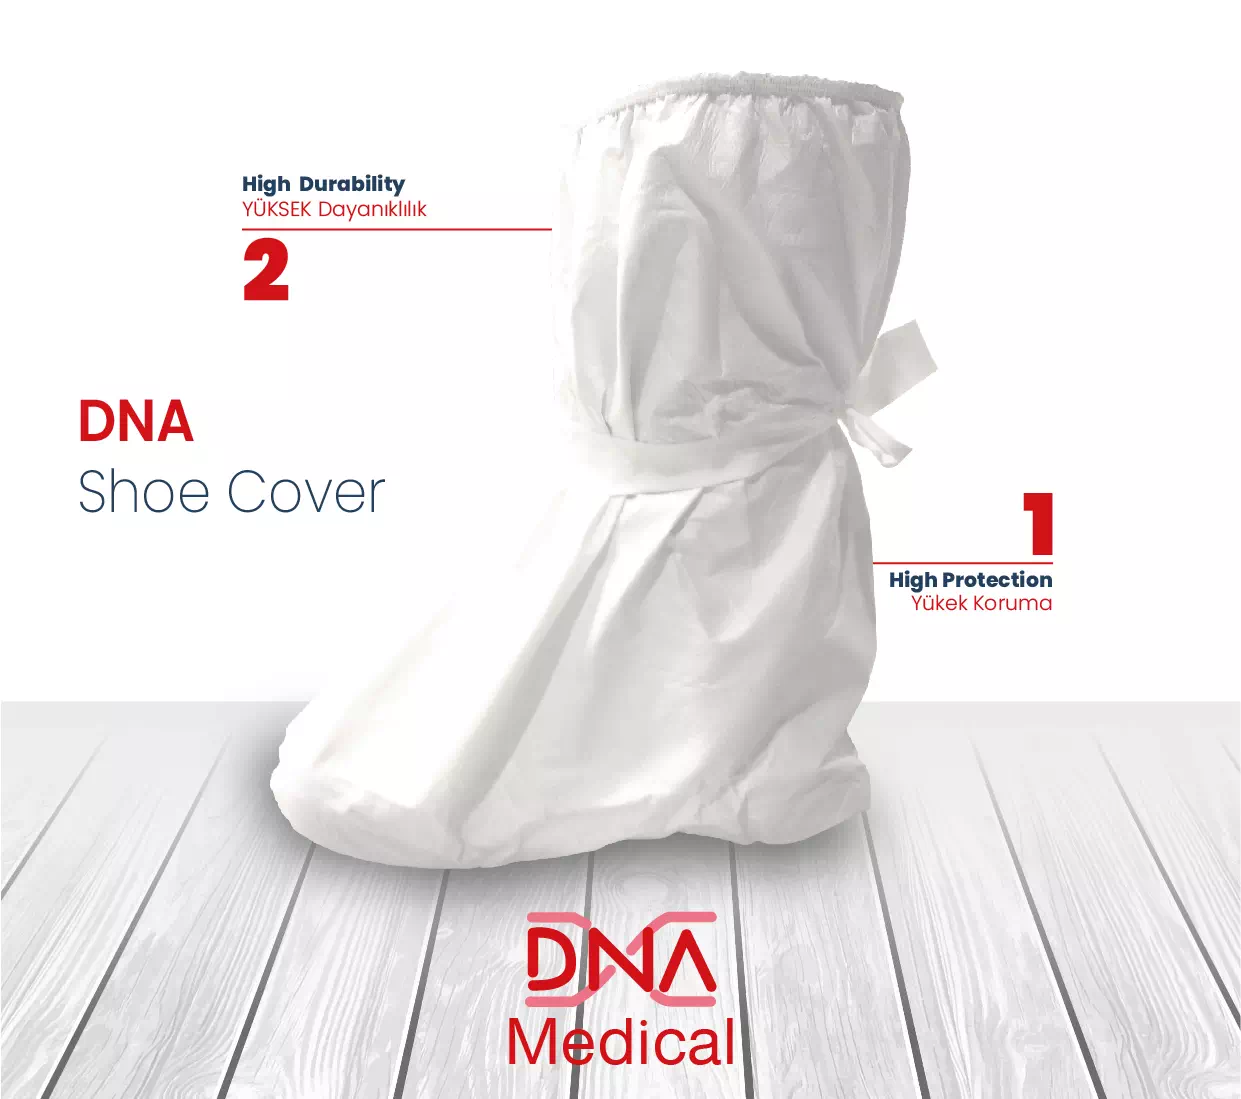 DNA Medıcal – Shoe Cover